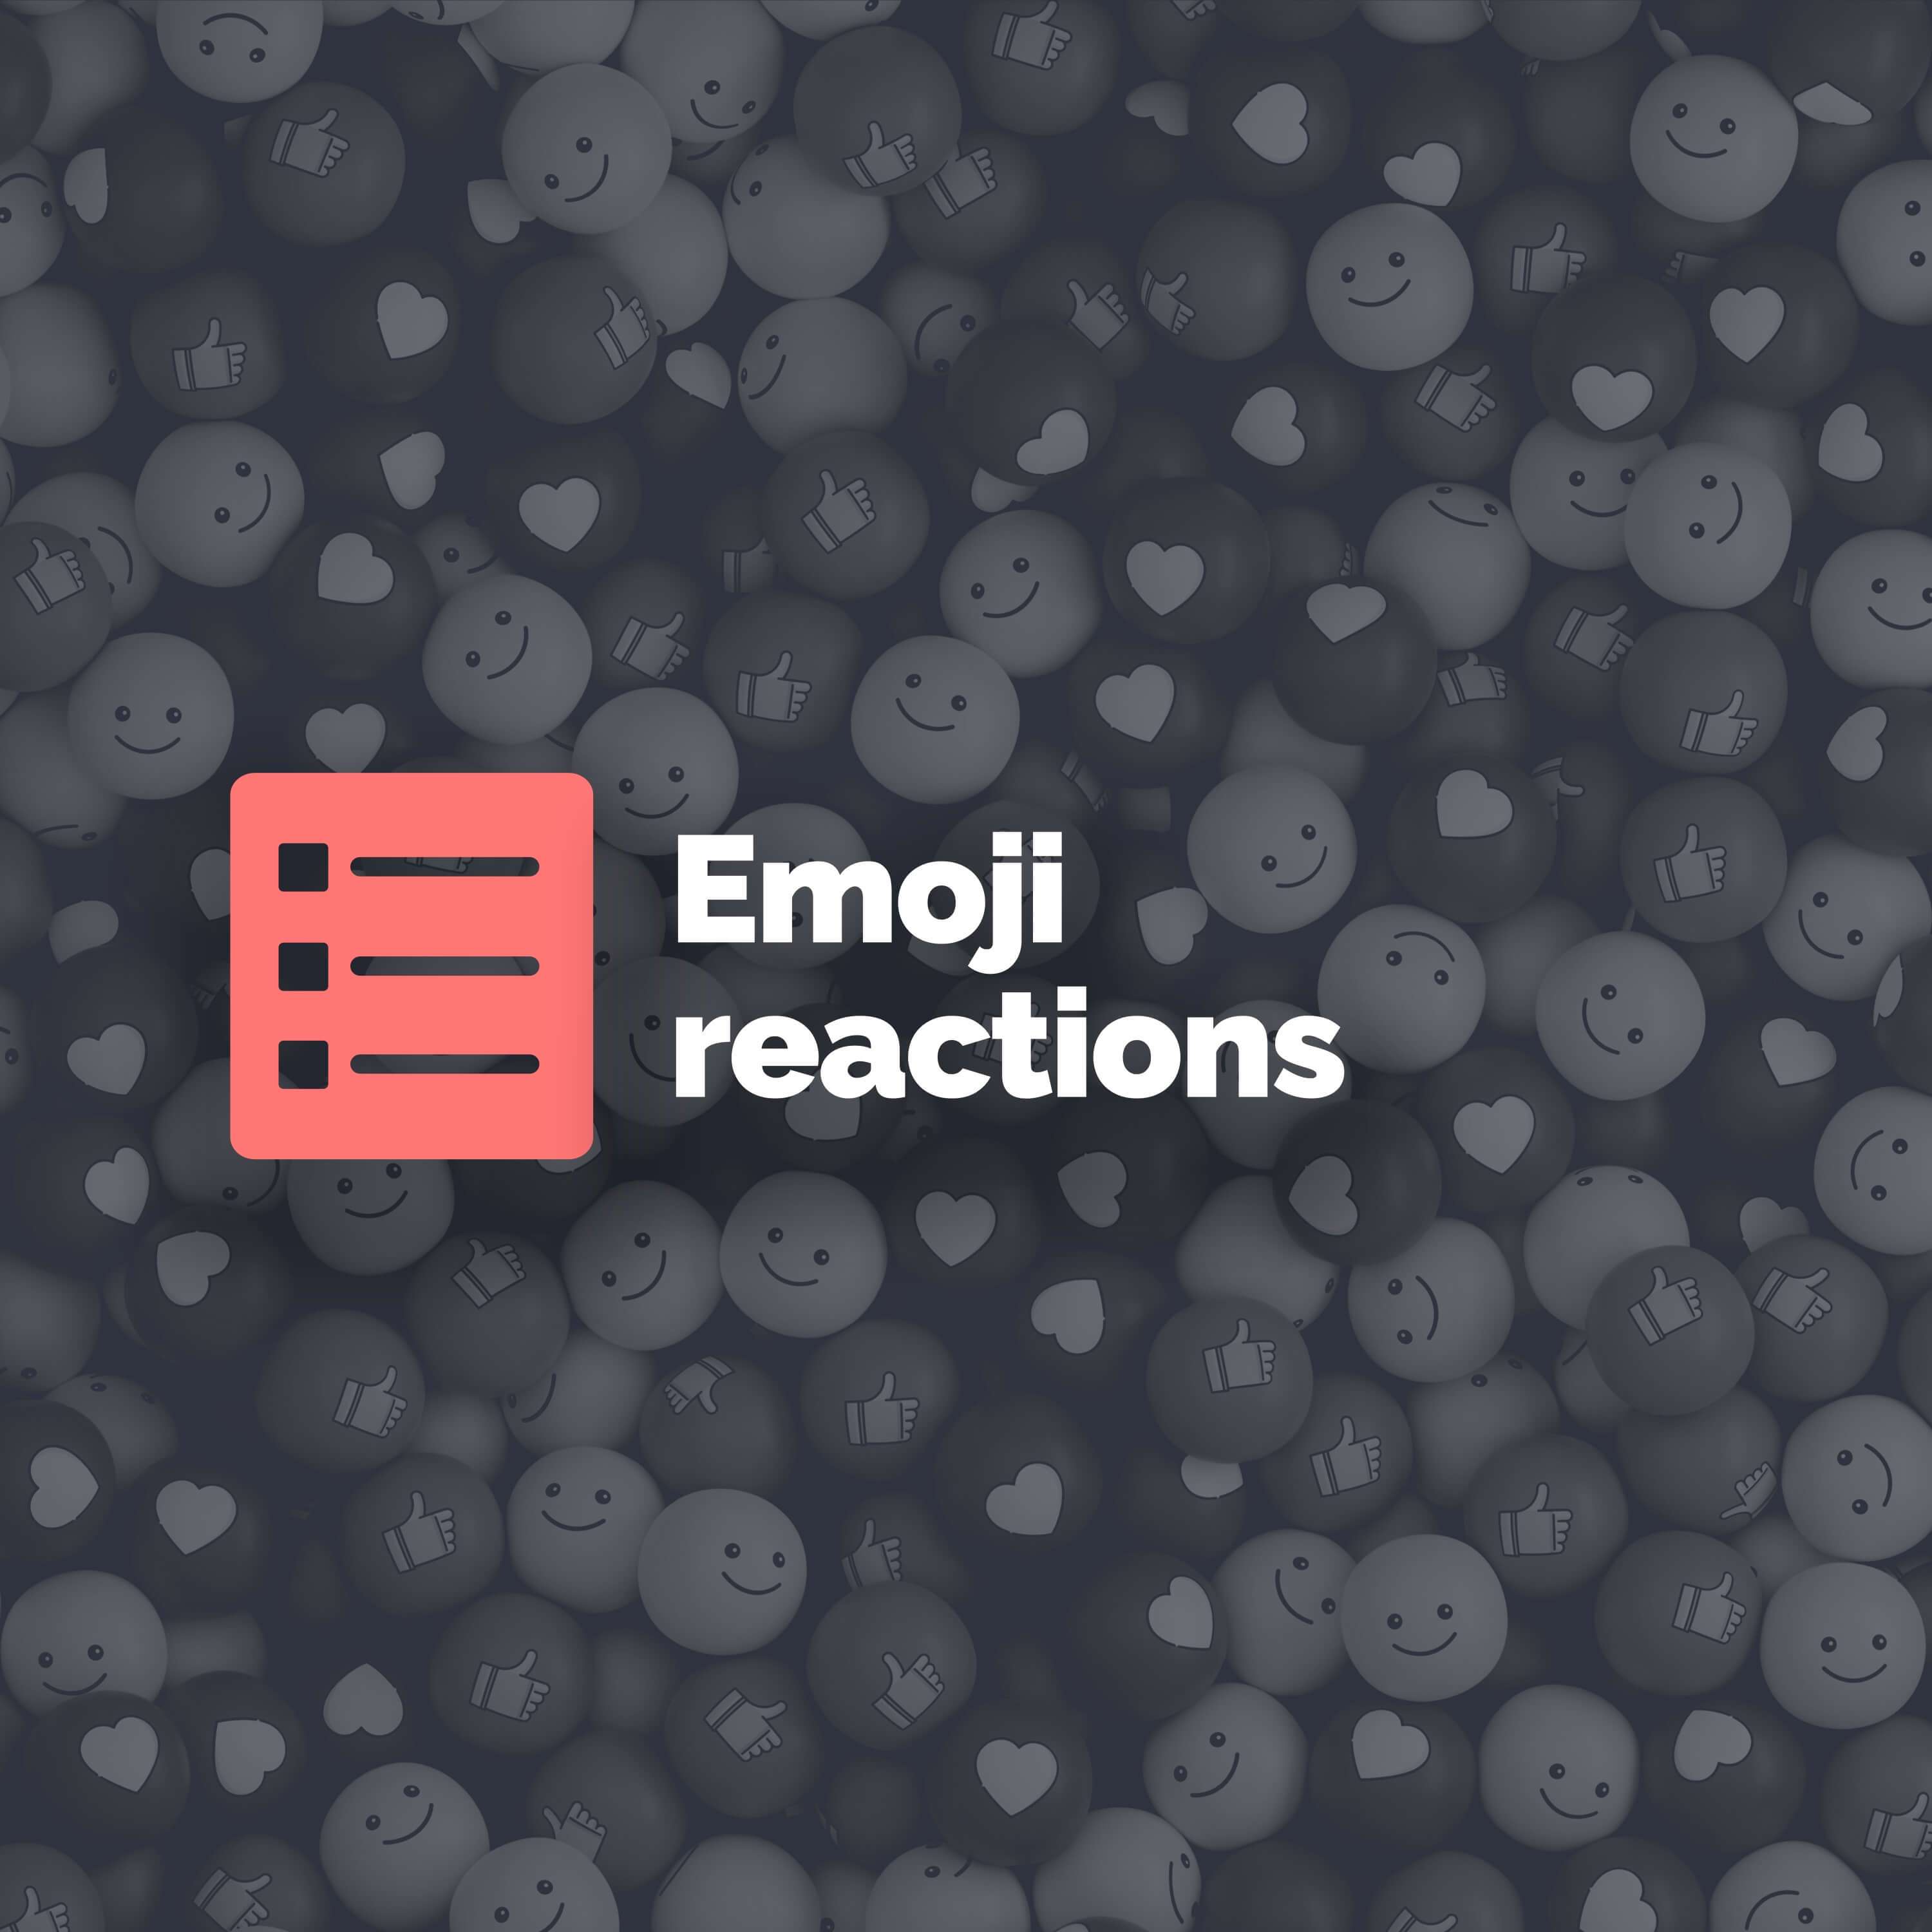 Top 5 emoji reactions